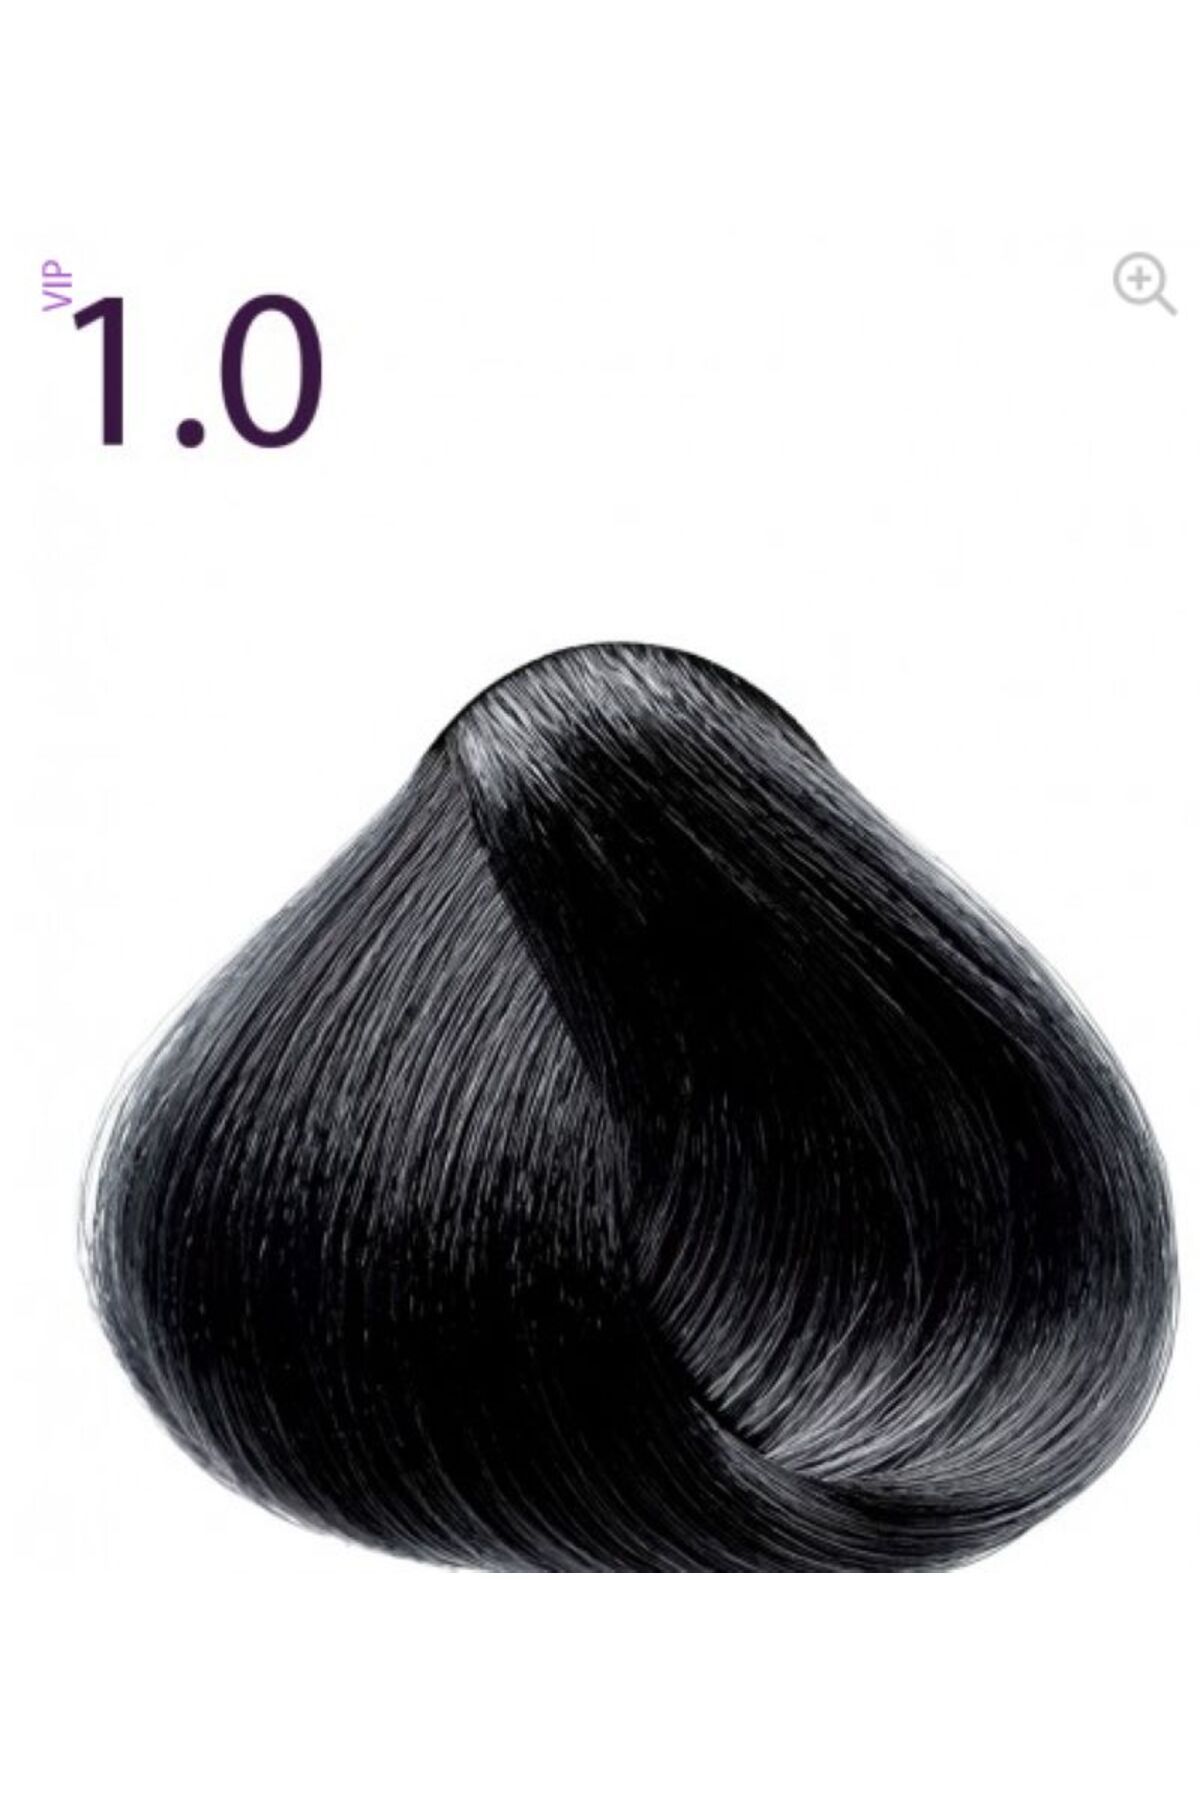 Faberlic expert saç boyası 1.0 siyah